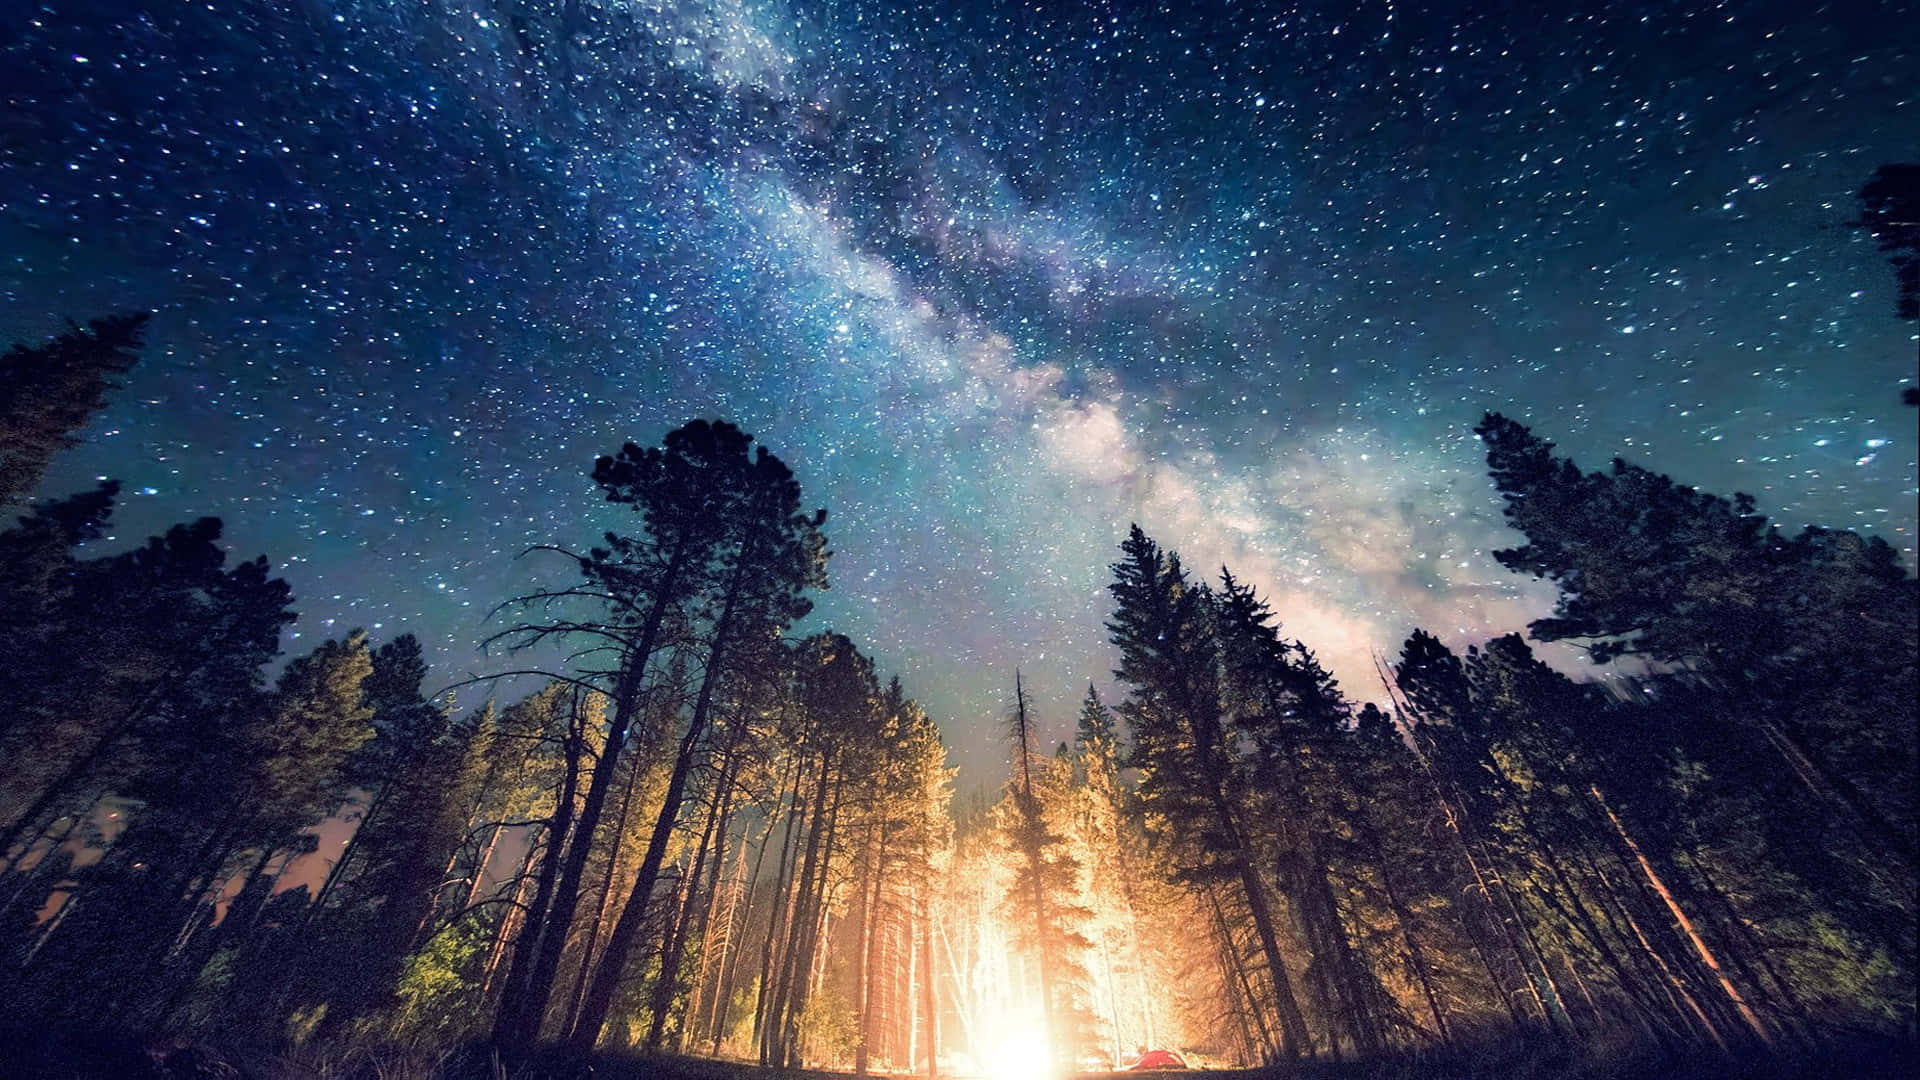 Mejorfondo De Pantalla Para Pc De Escritorio: Bosque Bajo El Cielo Estrellado De La Noche.